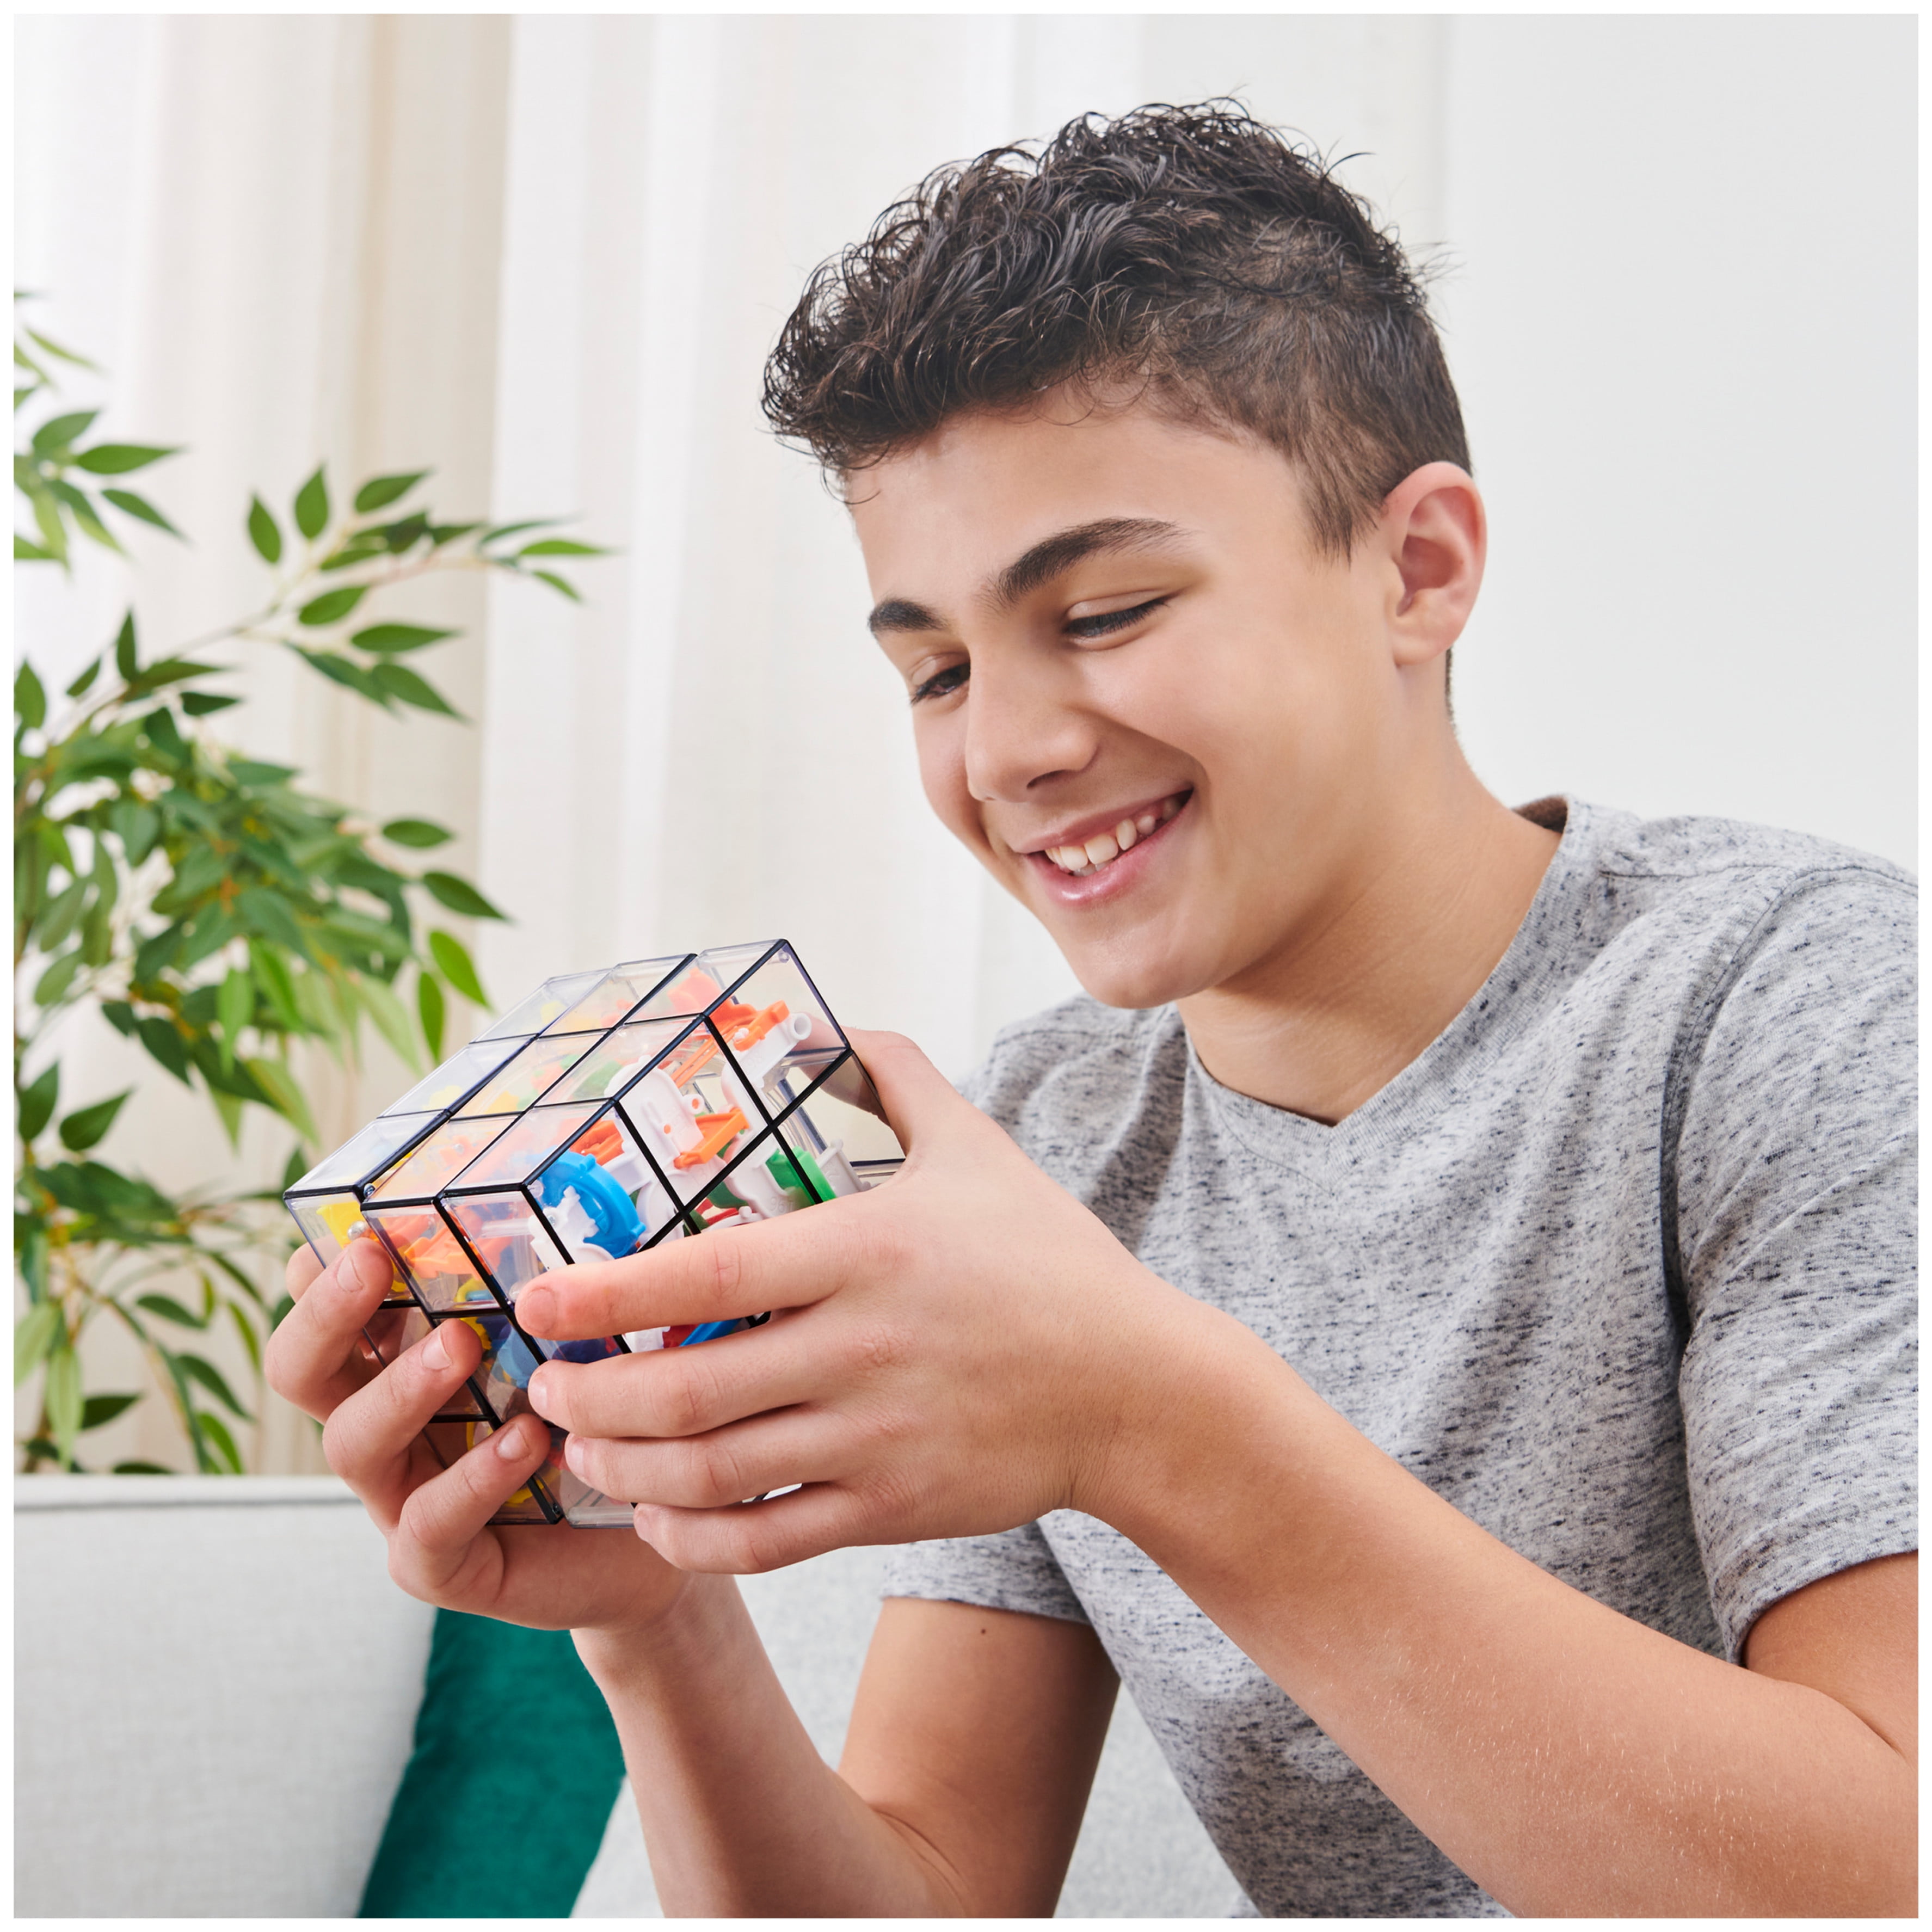 Perplexus Beginner 2019 + Rubik's Cube 3x3 Metallic - Brain Teaser